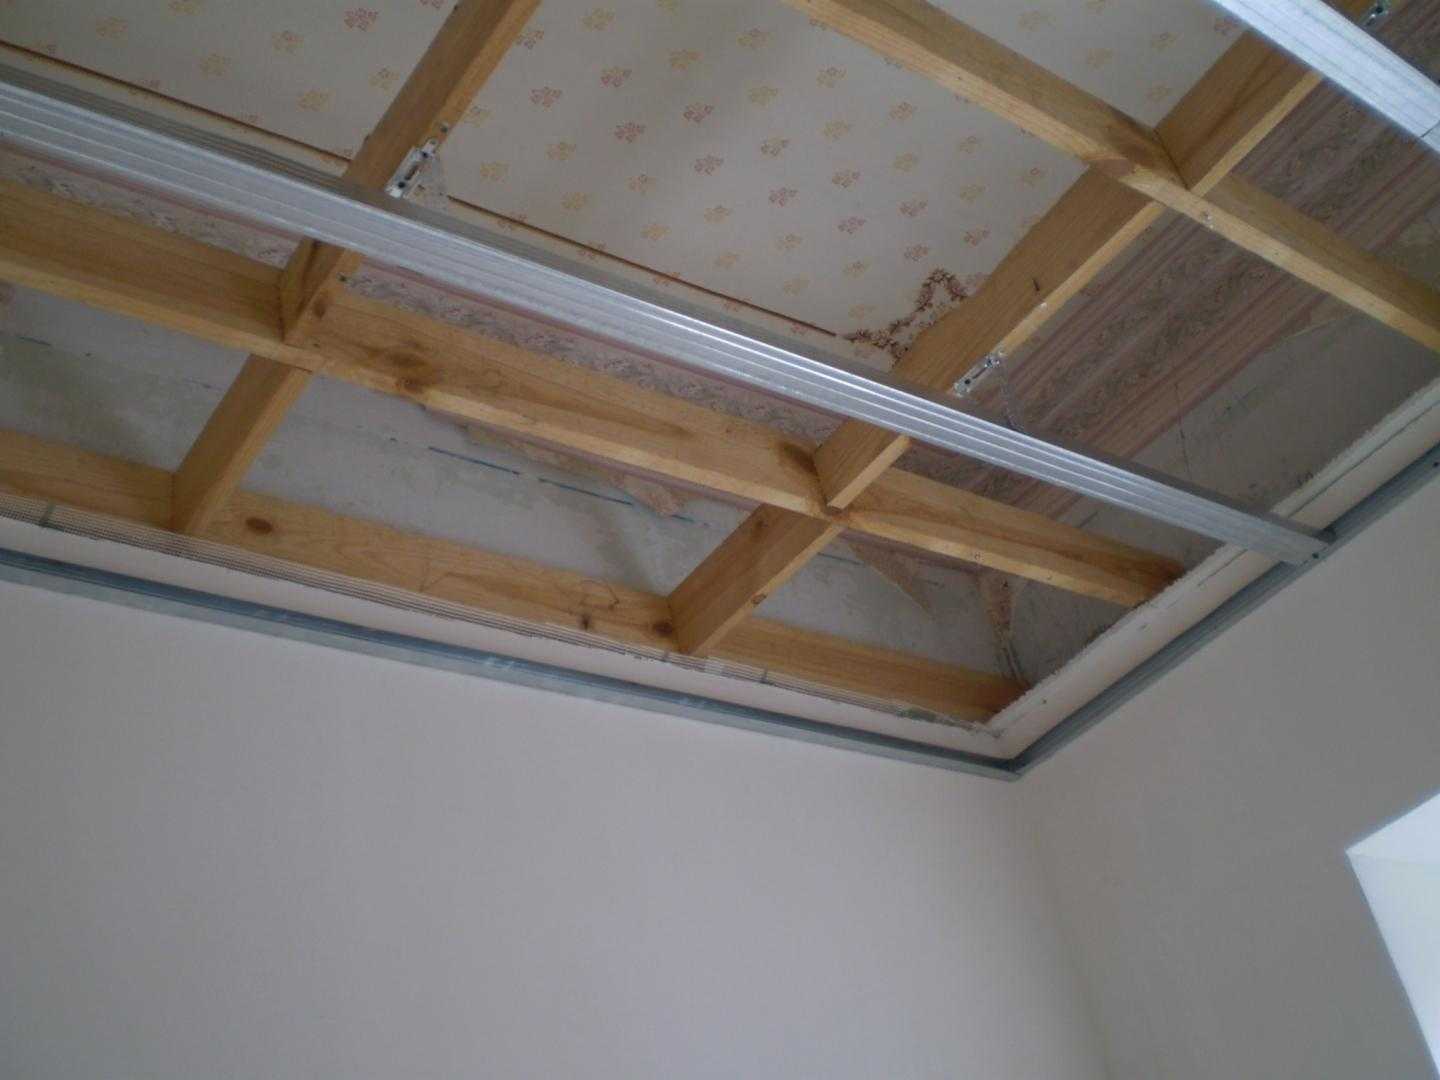 Оптимальным вариантом отделки для деревянного дома является обшивка стен гипсокартоном: несложный монтаж позволяет выполнить работы без привлечения специалистов